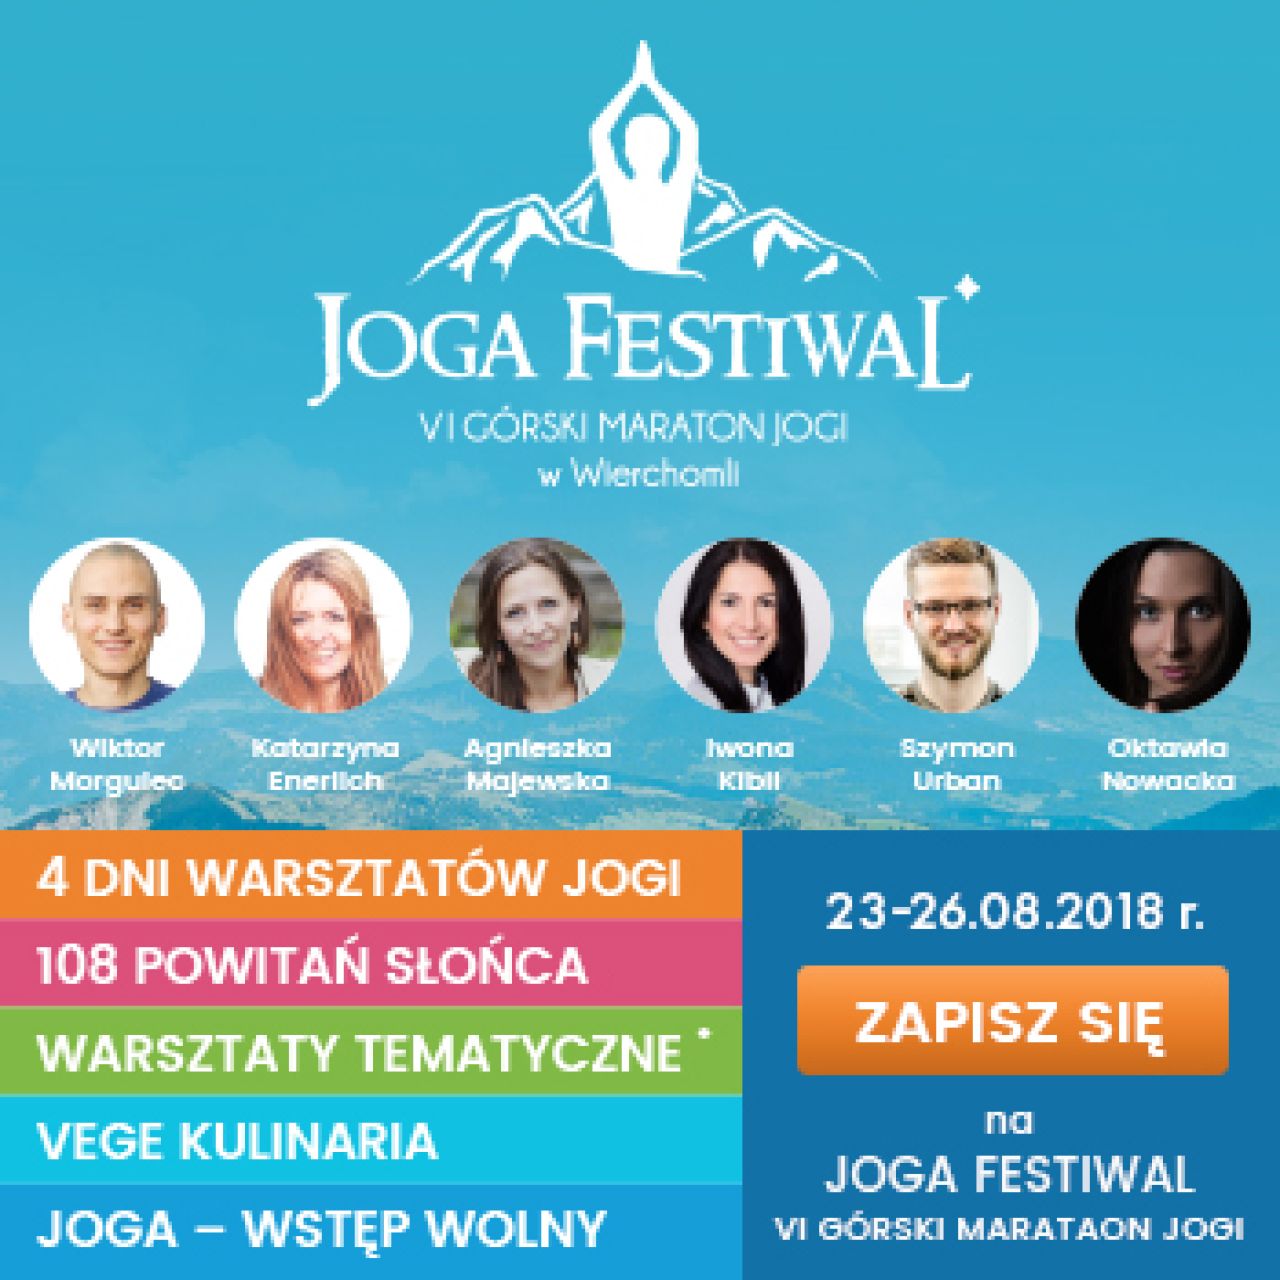 Joga Festiwal już za miesiąc